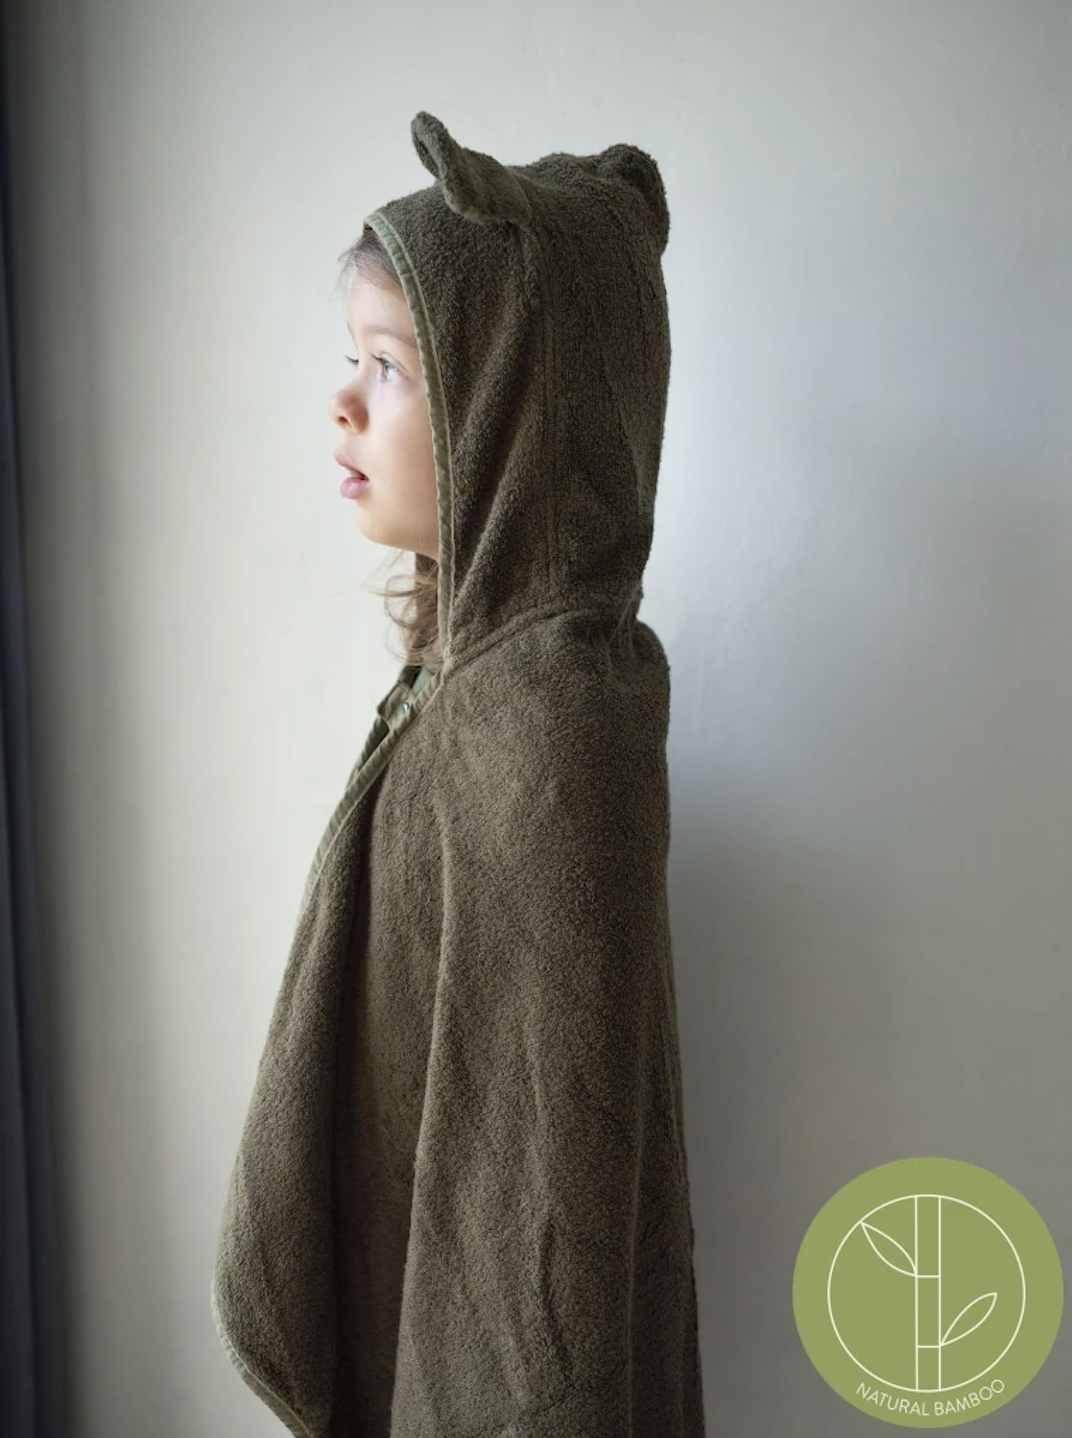 Bear Hooded Junior Towel in Olive (4-7 years)